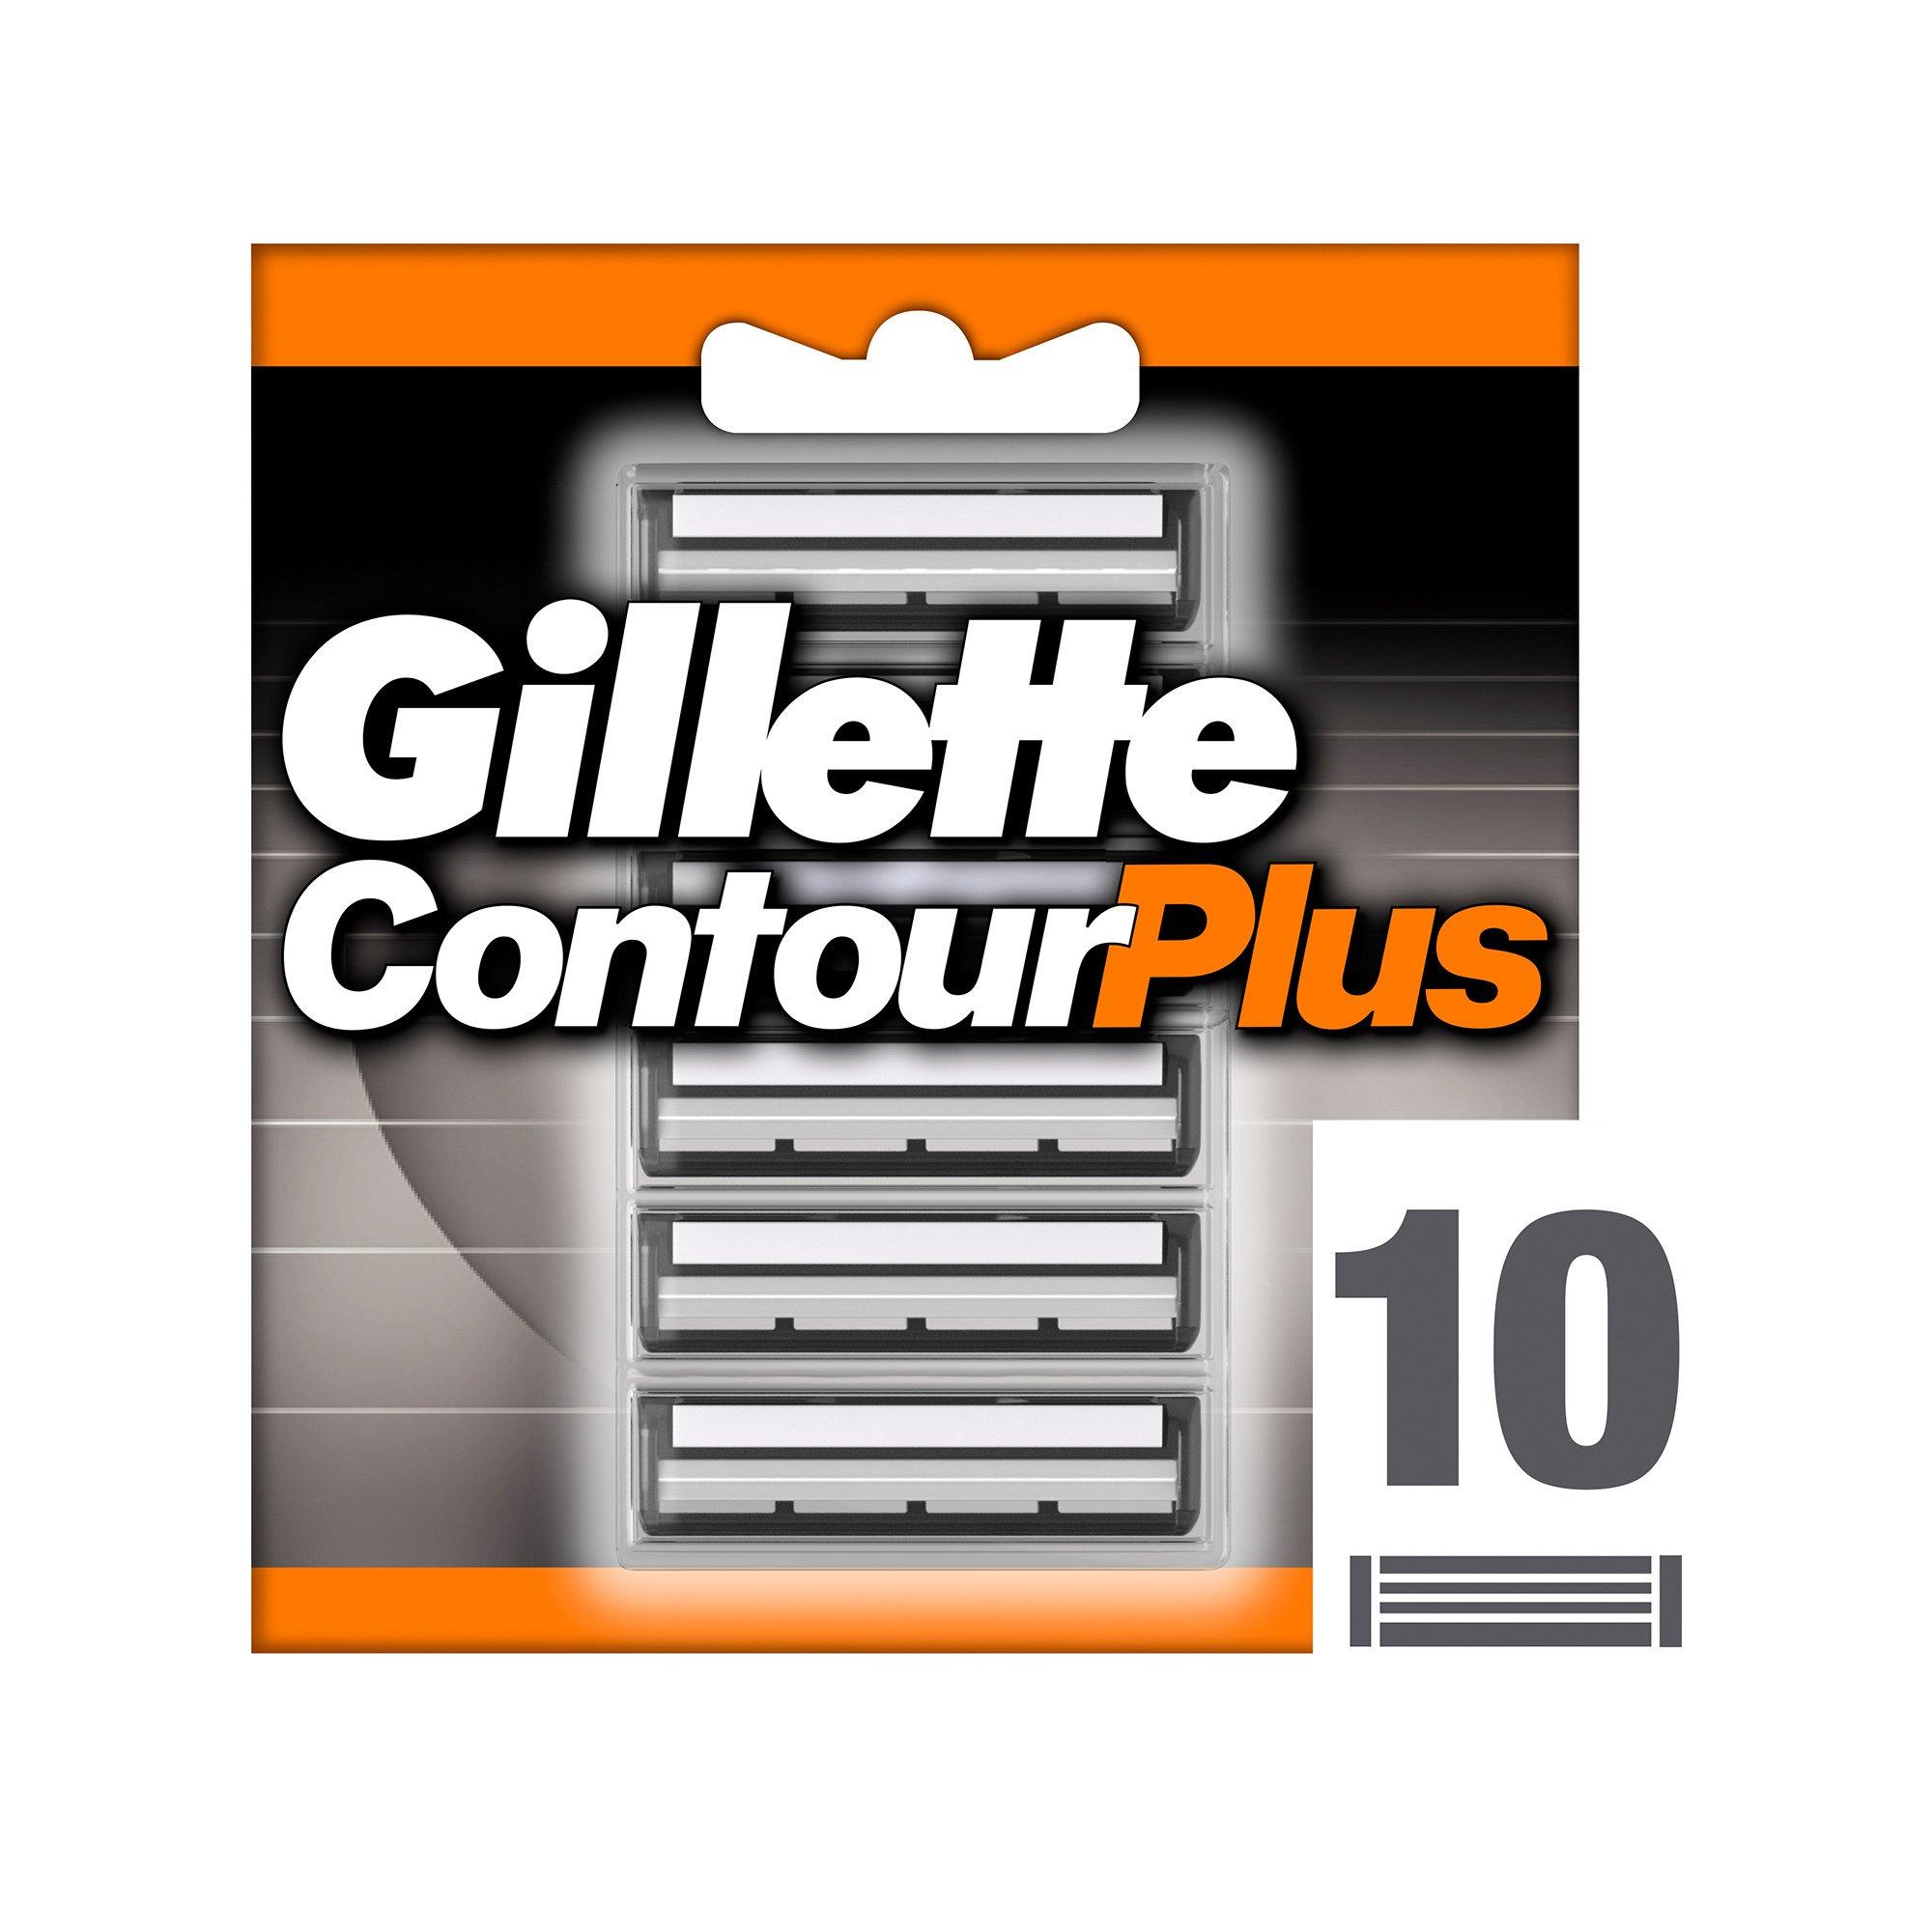 Image of Gillette ContourPlus Systemklingen Contour Plus Klingen - 10 pieces